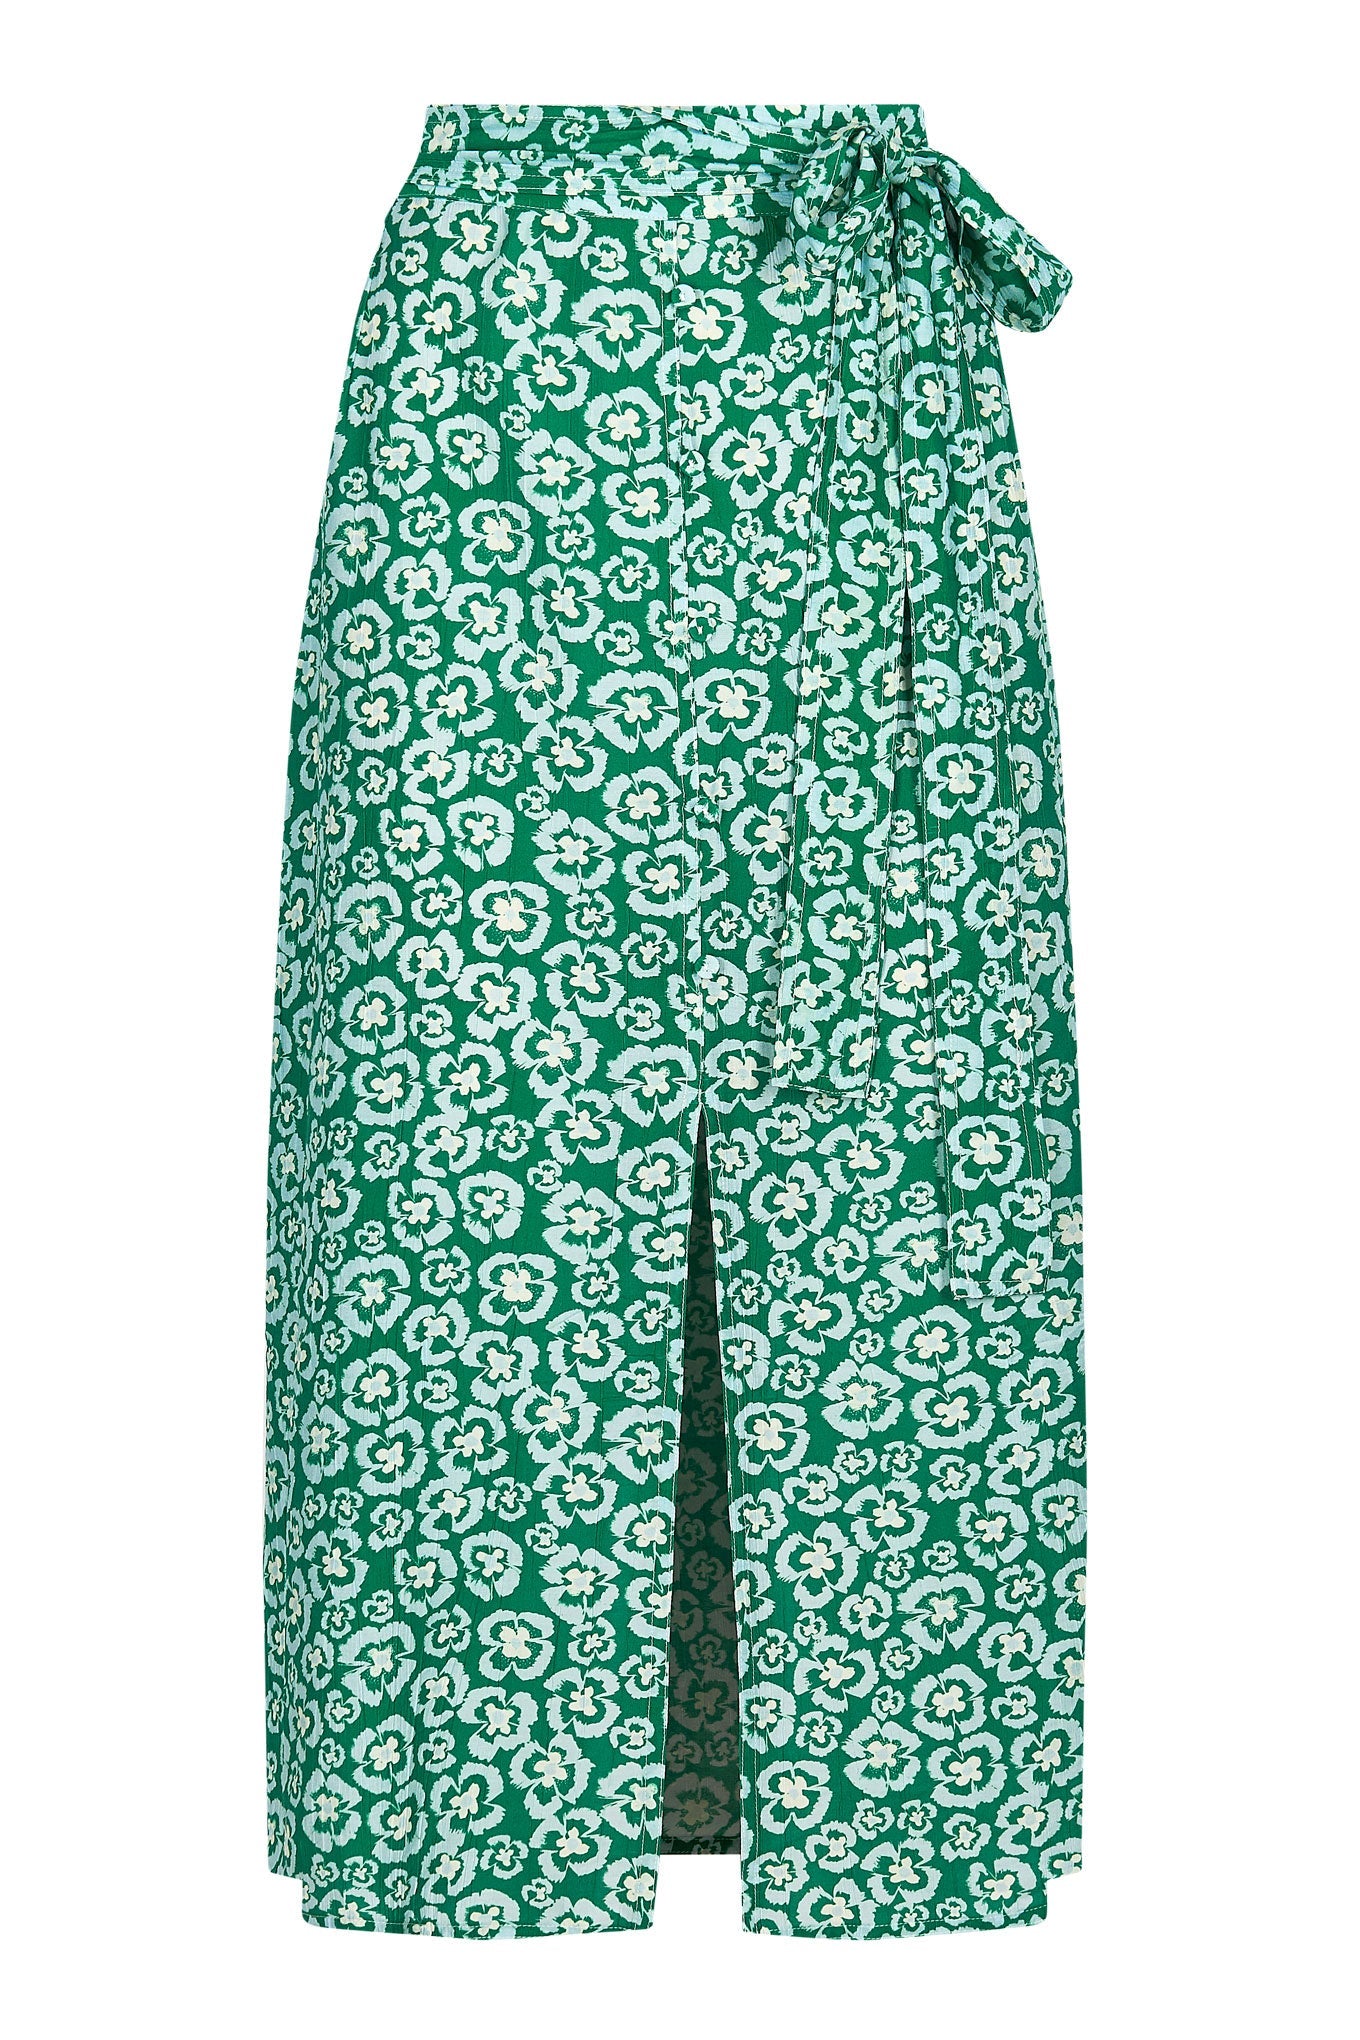 Skirt - PANSY Floral Printed Rayon Skirt